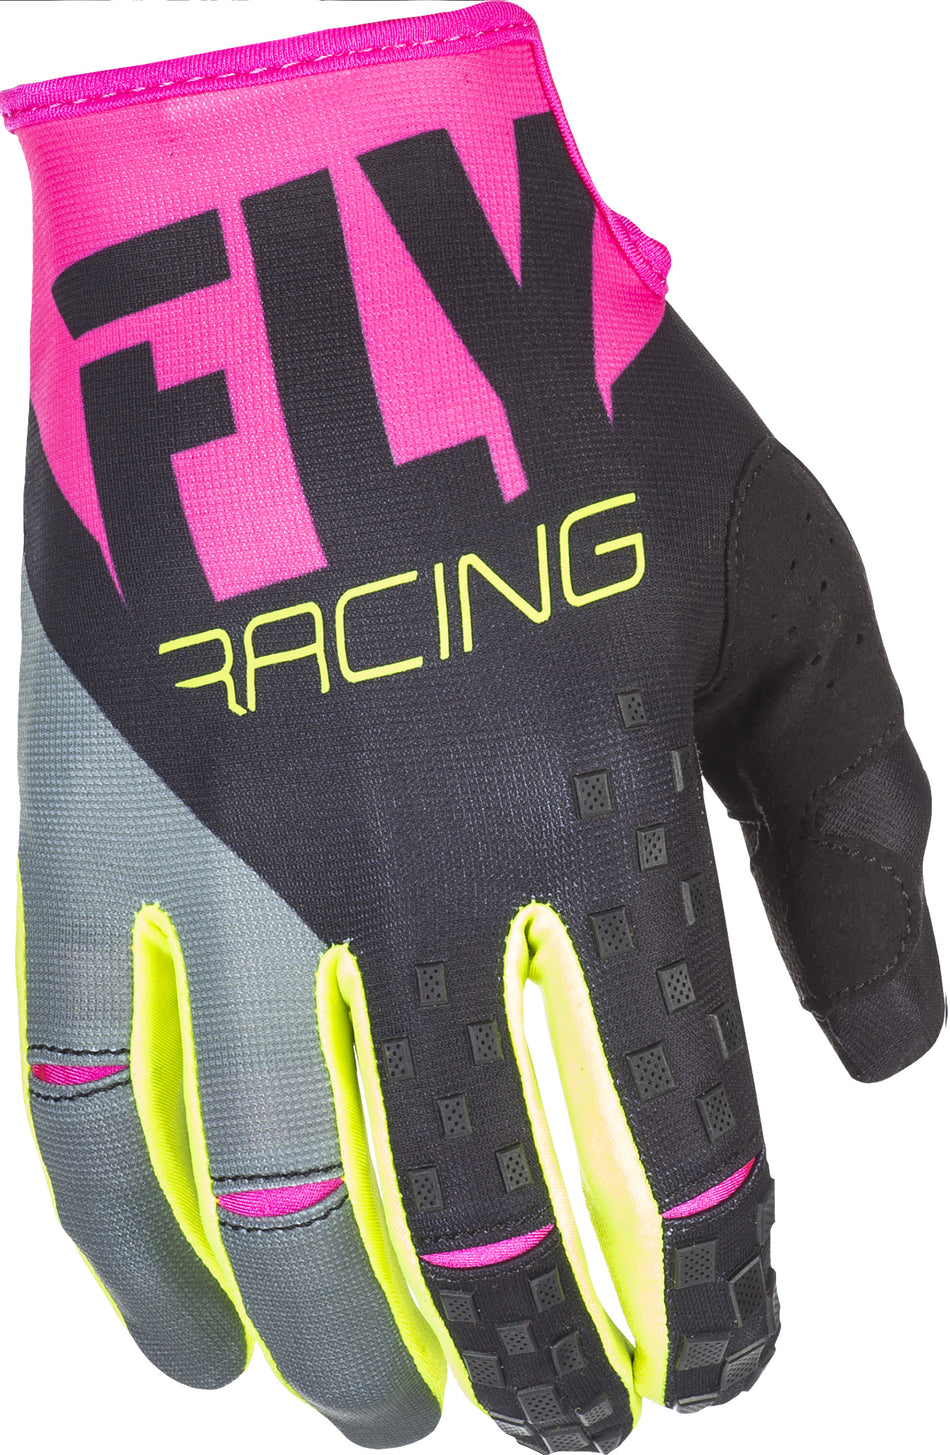 FLY RACING Kinetic Gloves Neon Pink/Black/Hi-Vis Sz 8 371-41908